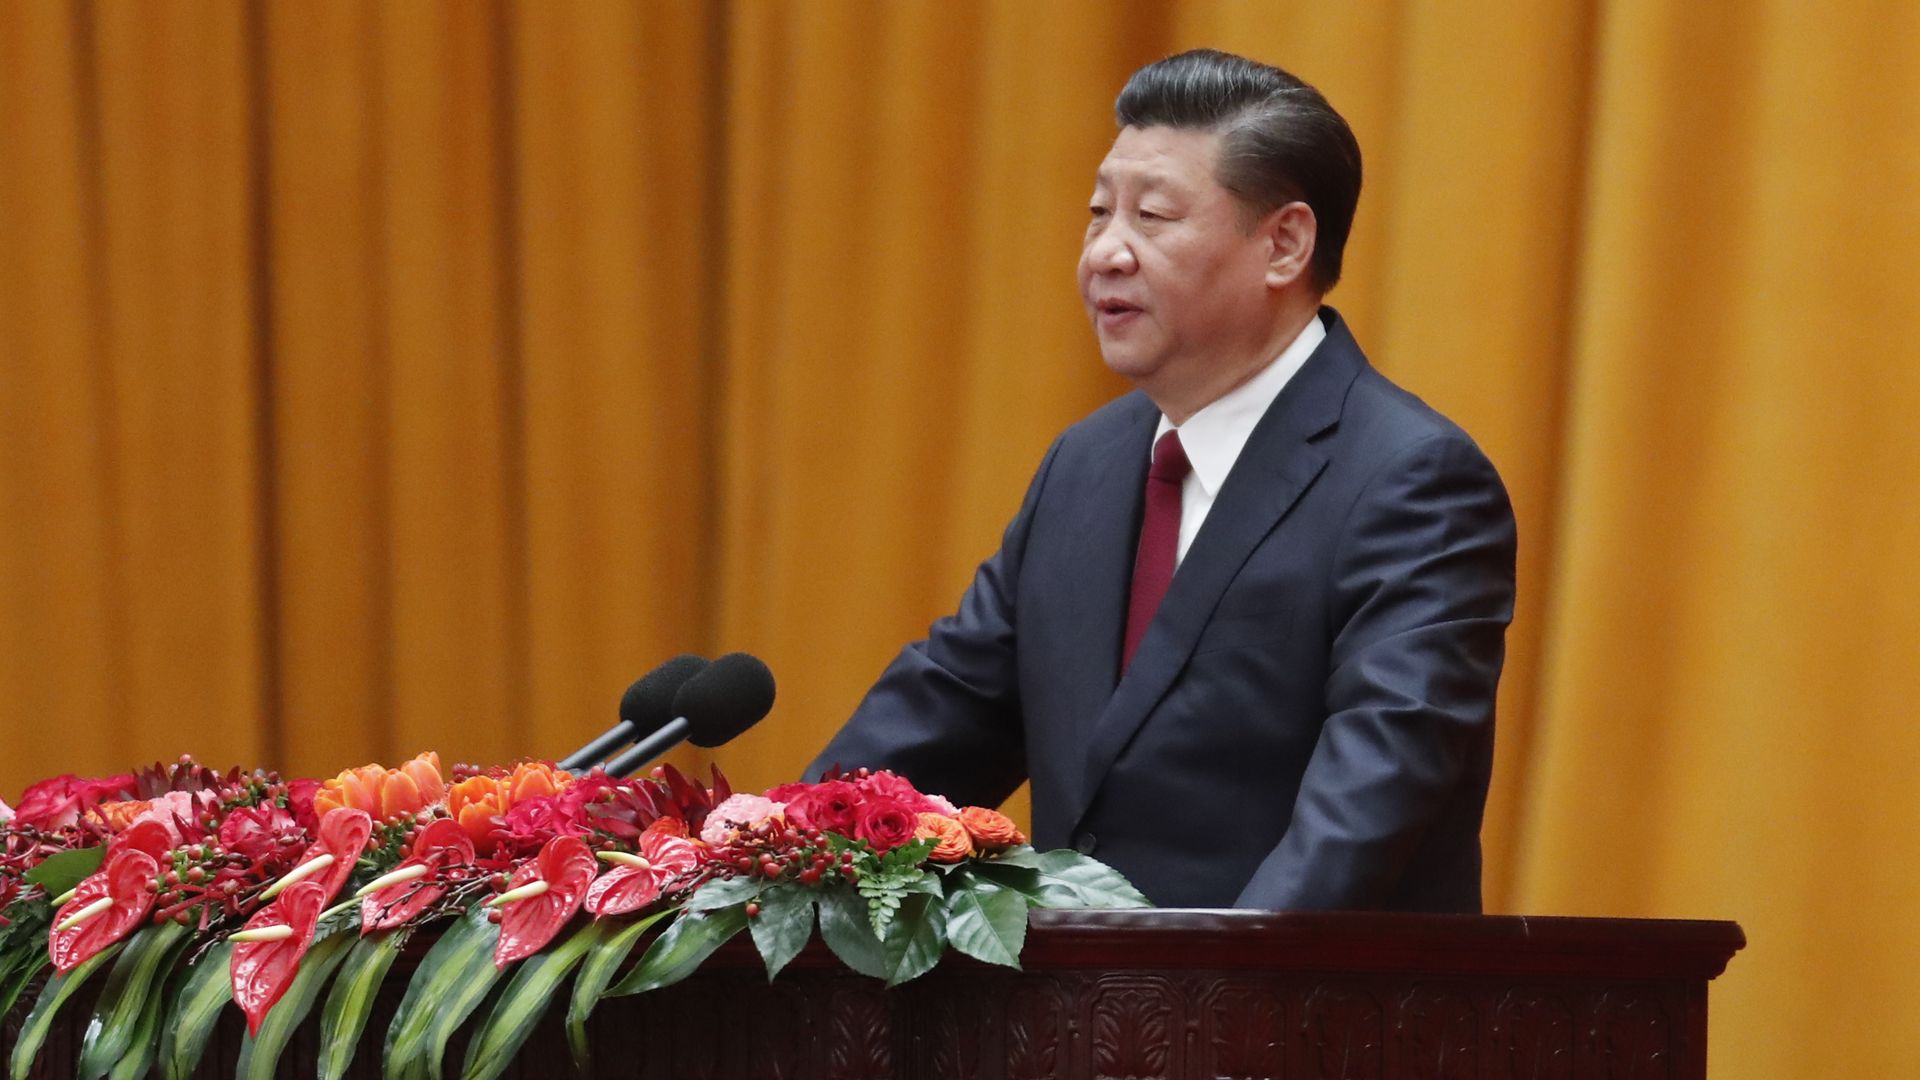 Xi Jinping at lectern